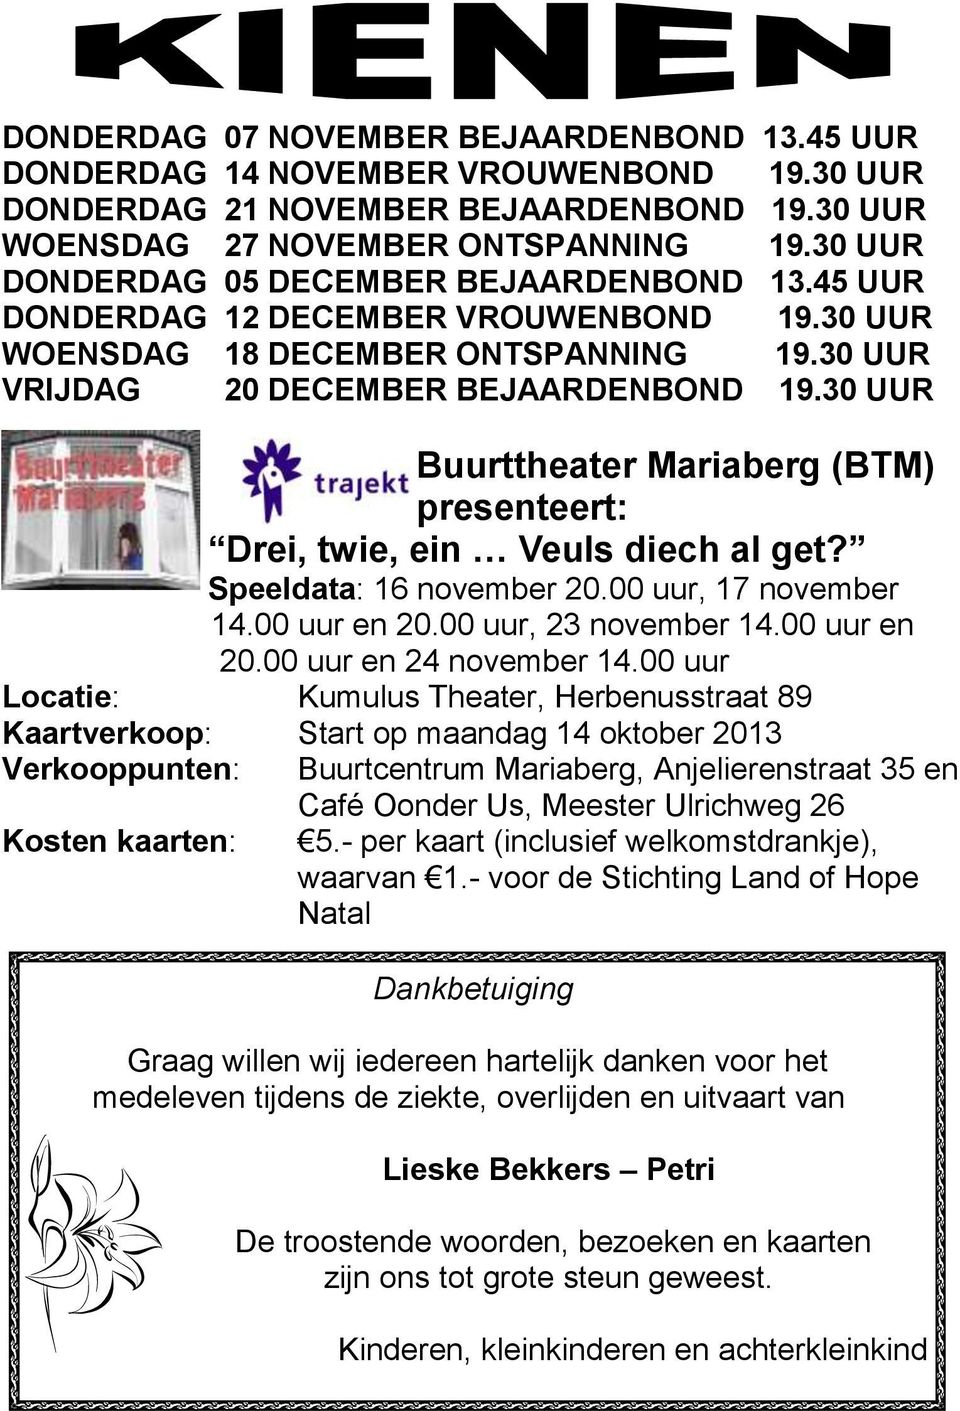 30 UUR Buurttheater Mariaberg (BTM) presenteert: Drei, twie, ein Veuls diech al get? Speeldata: 16 november 20.00 uur, 17 november 14.00 uur en 20.00 uur, 23 november 14.00 uur en 20.00 uur en 24 november 14.